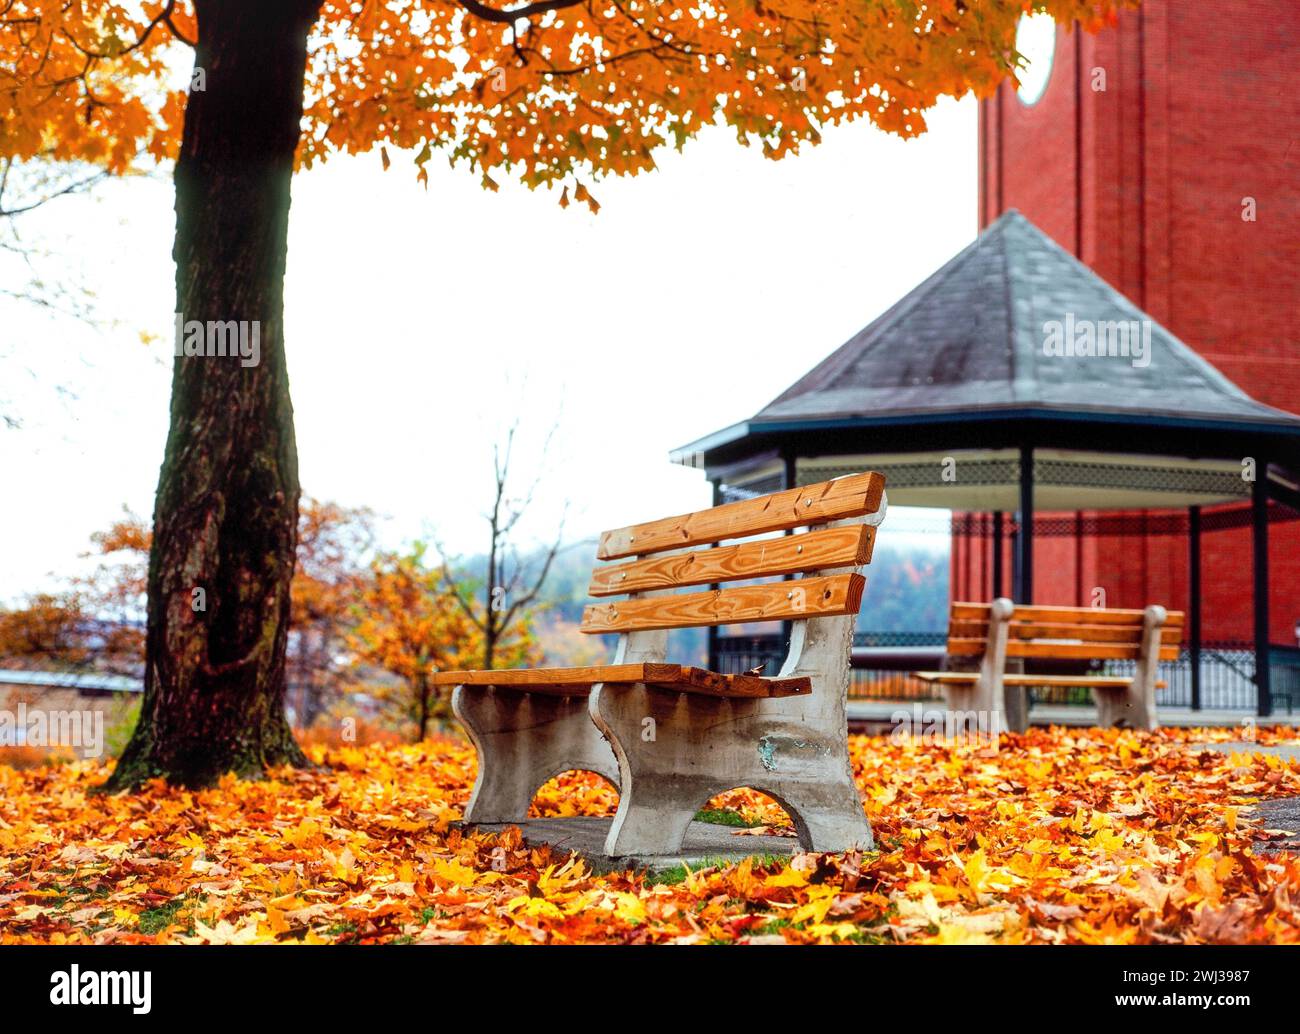 St. Johnsbury, Vermont in autumn - USA Stock Photo